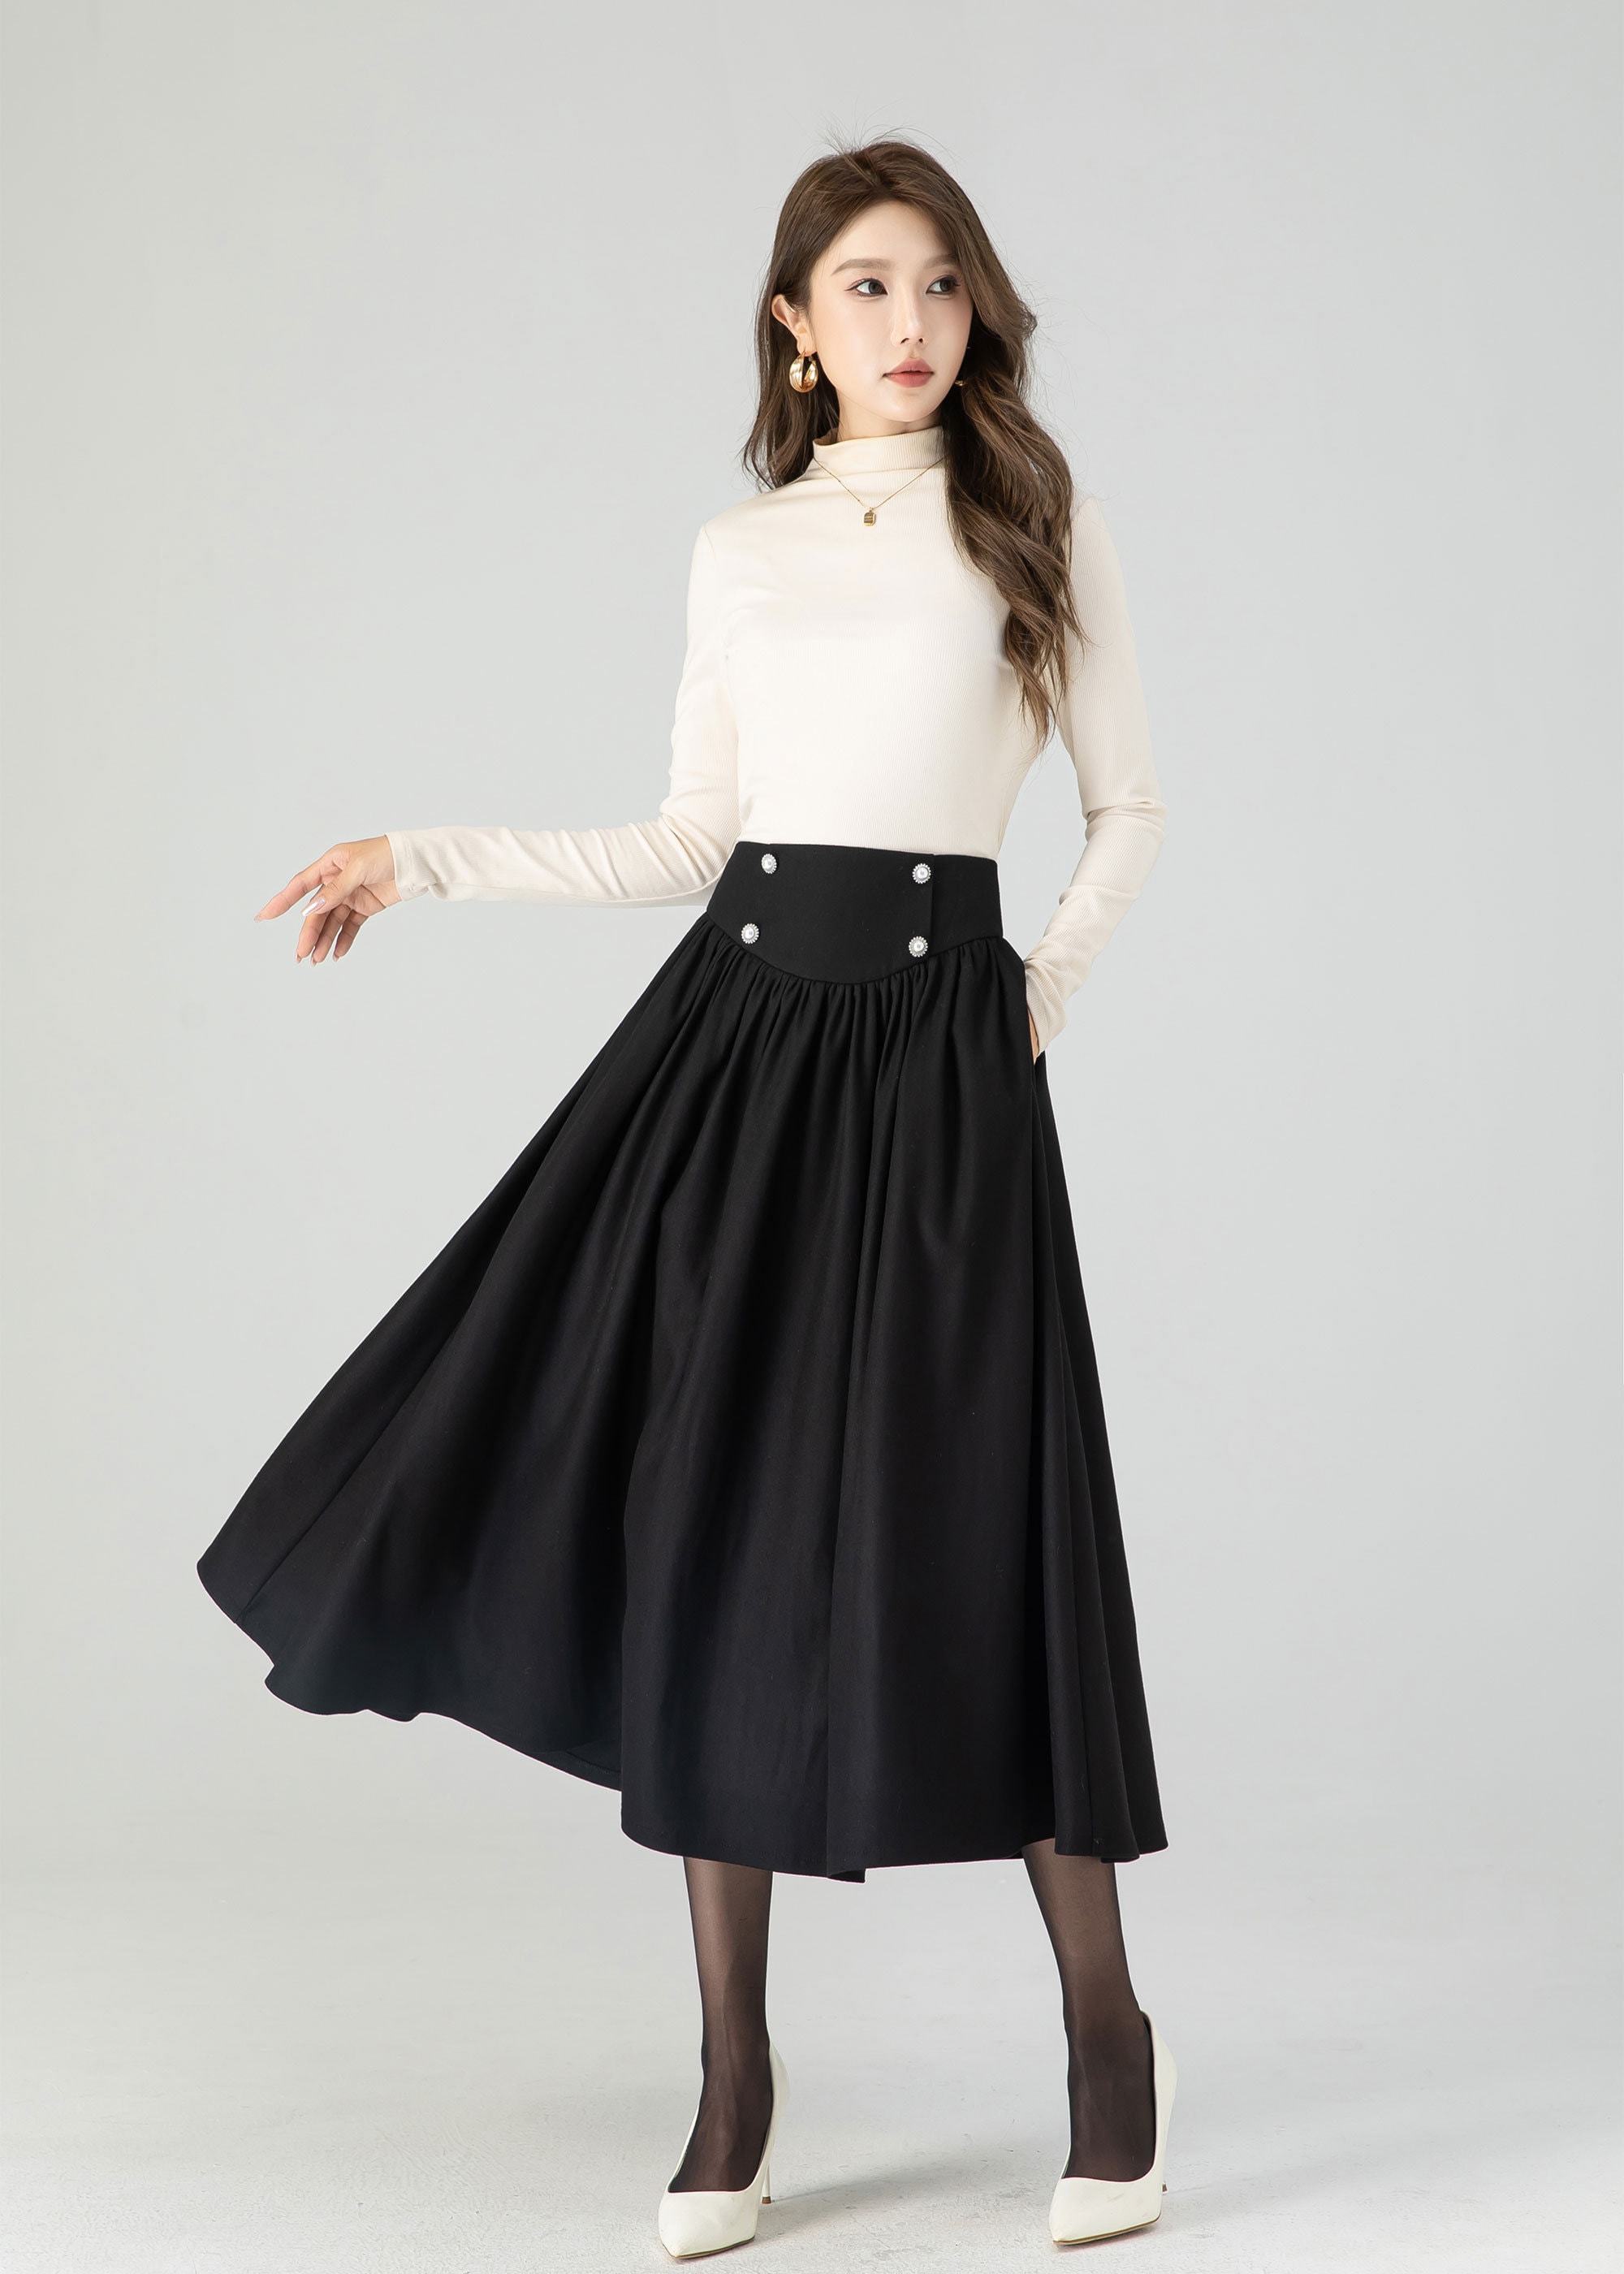 A Line Maxi Skirt With Big Pocket, Long Linen Skirt, Linen Skirt, Fall Skirt,  High Waist Skirt, Autumn Winter Skirt, Classic Skirt 0820 -  Canada